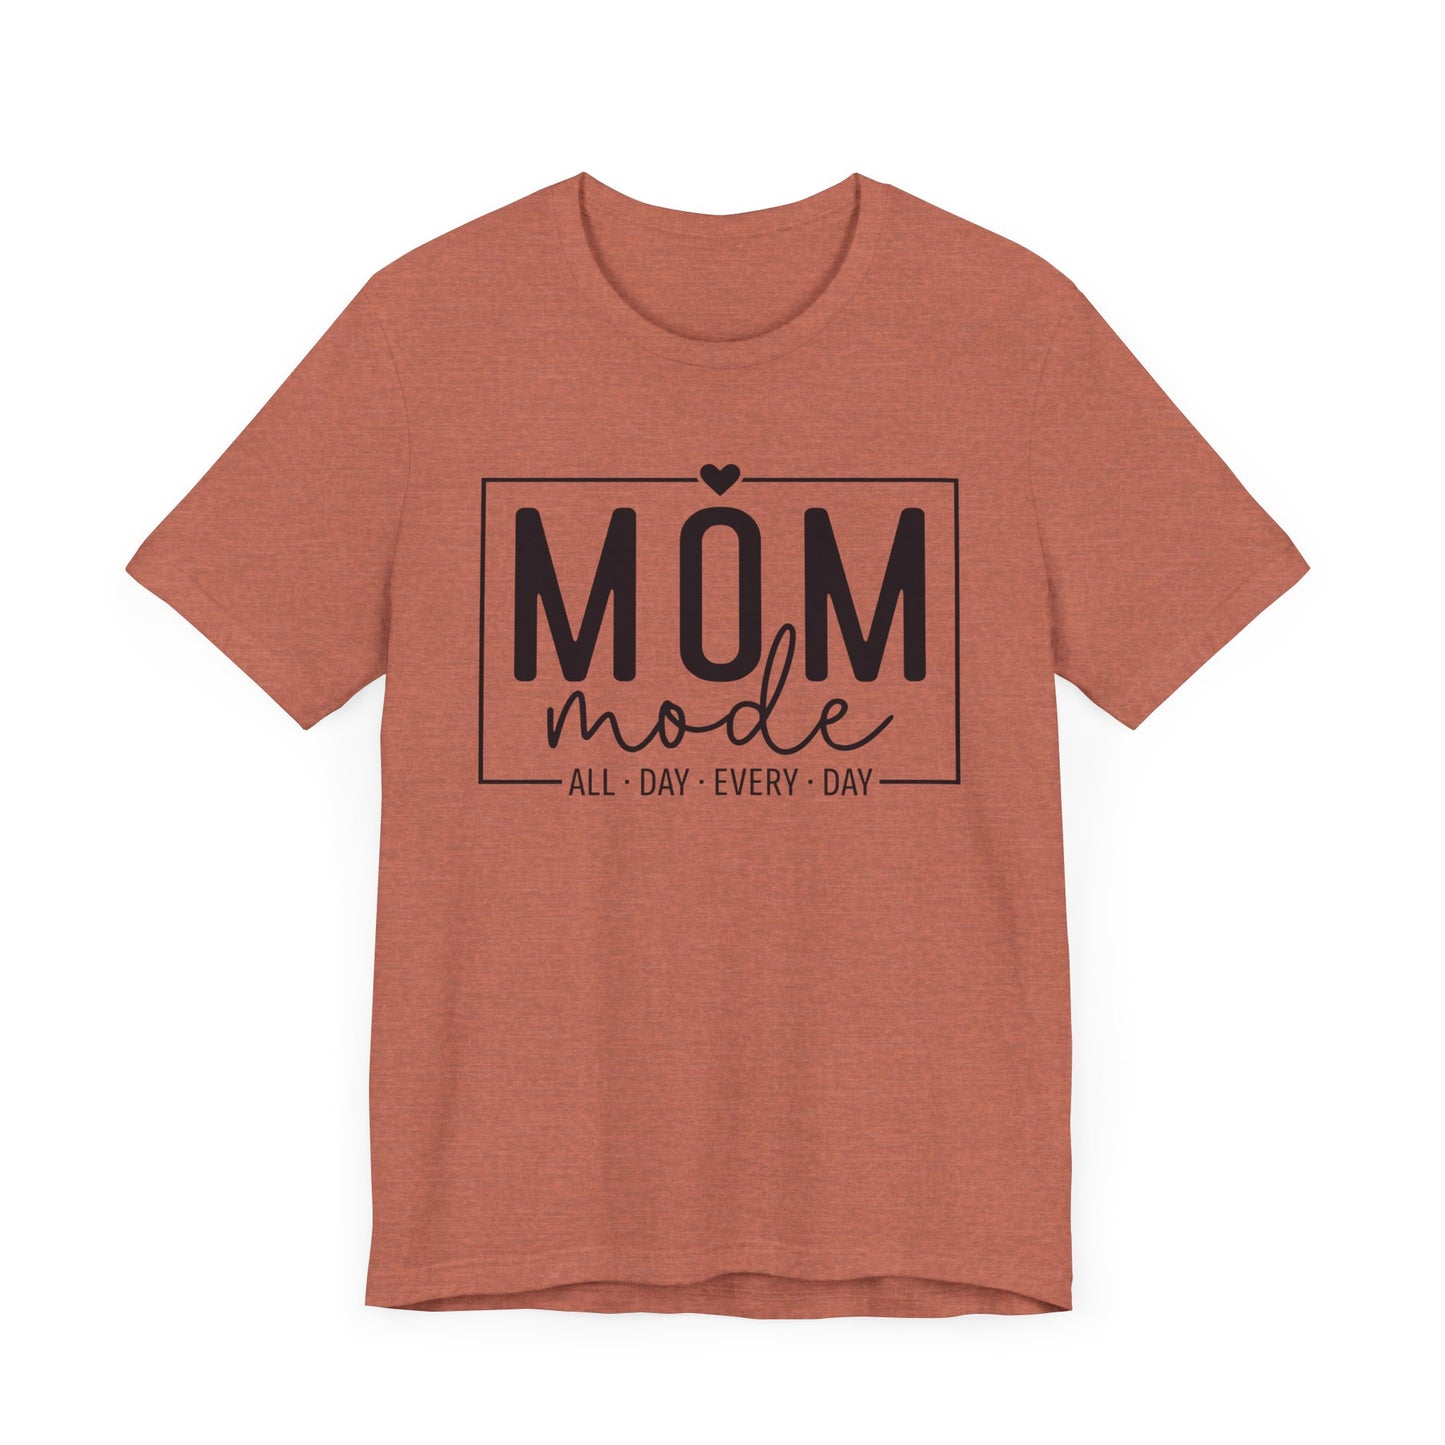 Mom Mode - Jersey Short Sleeve T-Shirt